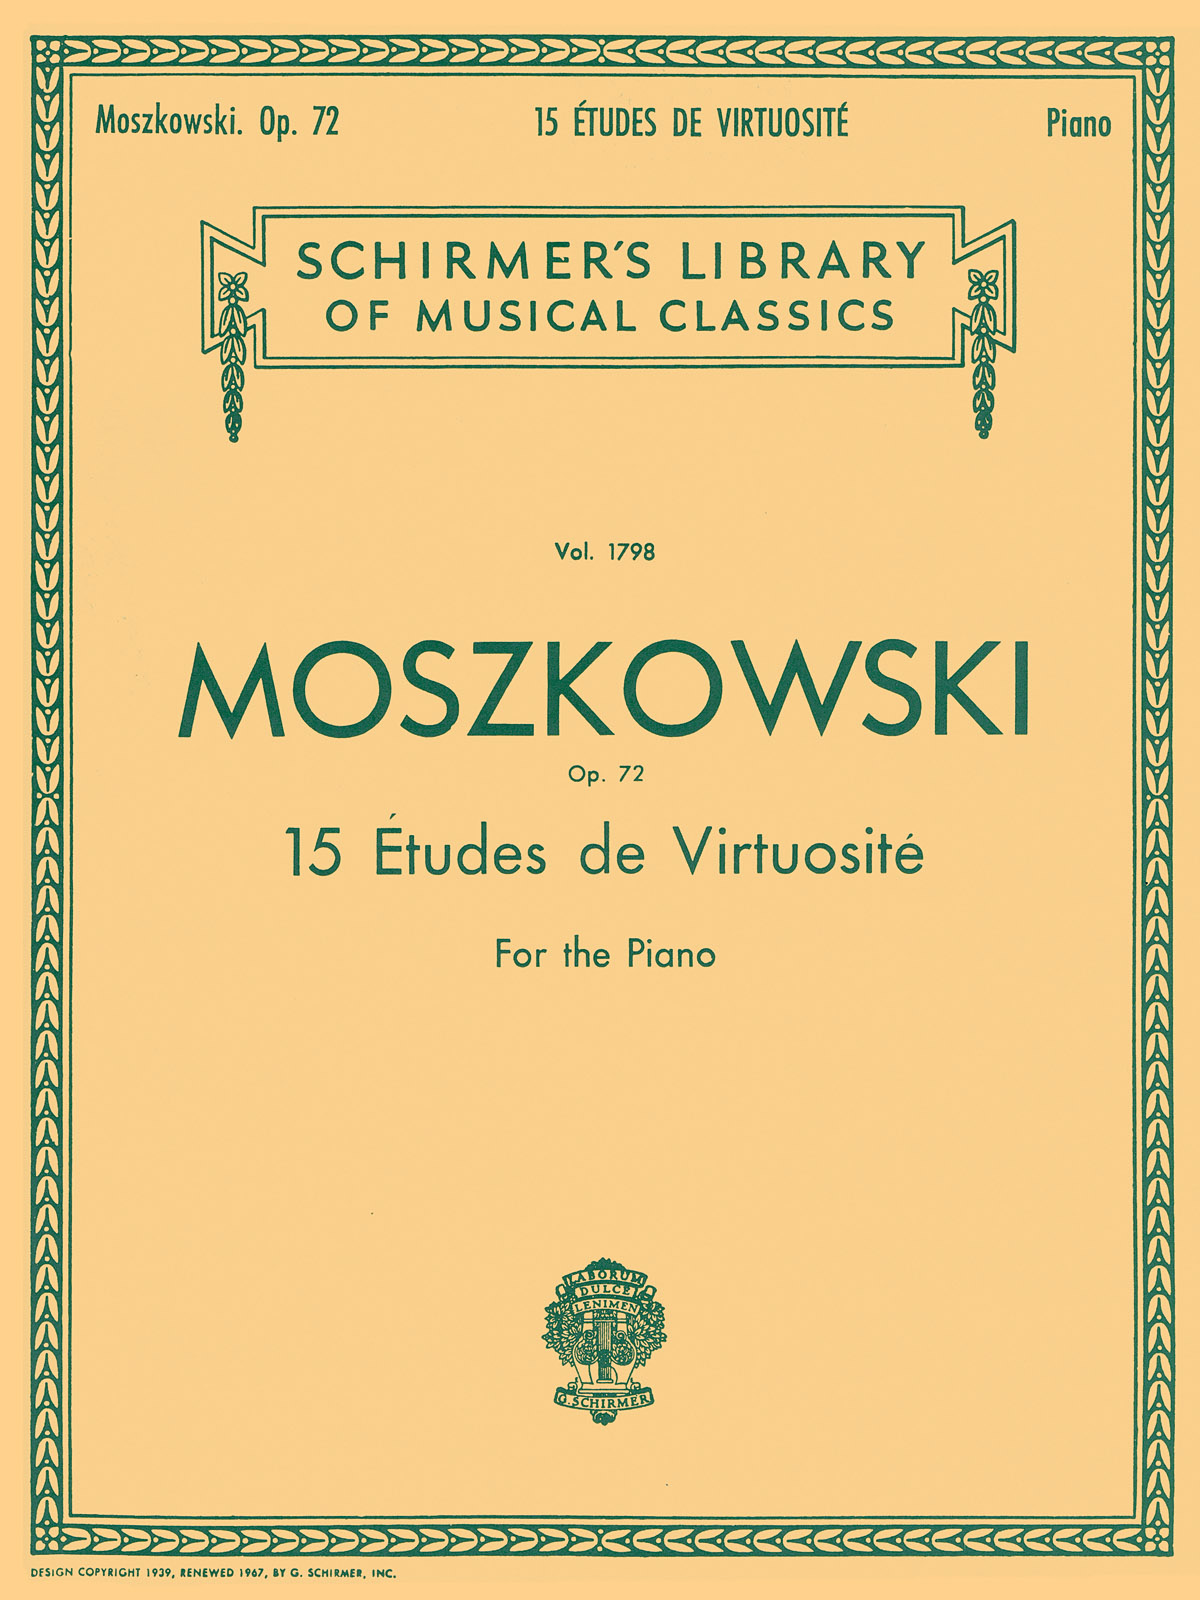 Moritz Moszkowski: Fifteen Etudes Virtuositie Op.72